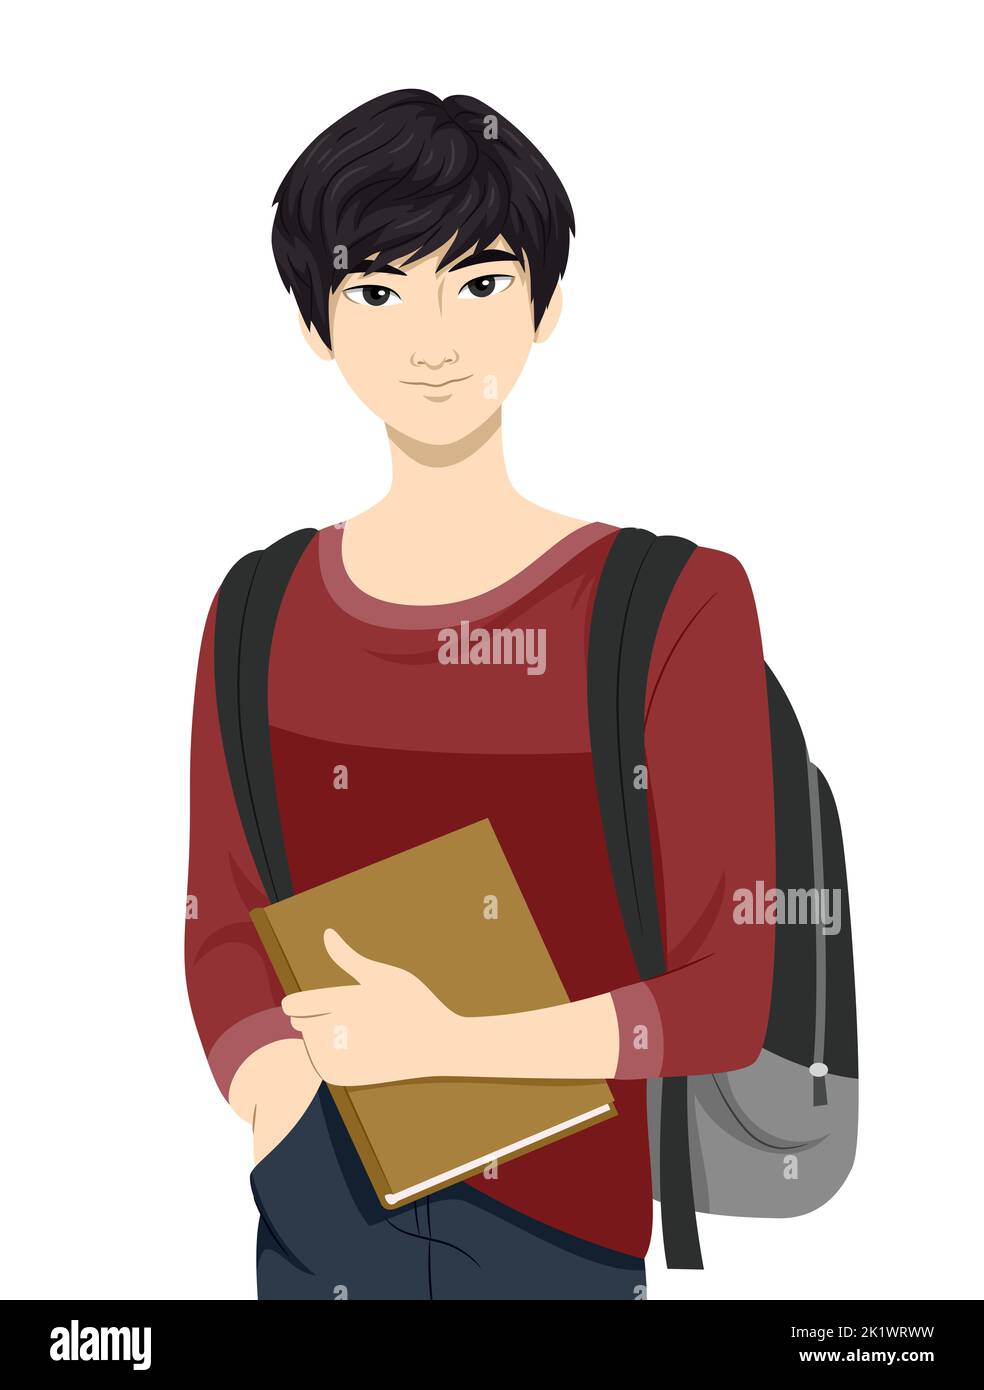 Illustrazione dello studente teen guy dell'Asia orientale con una borsa per la scuola che trasporta un libro Foto Stock